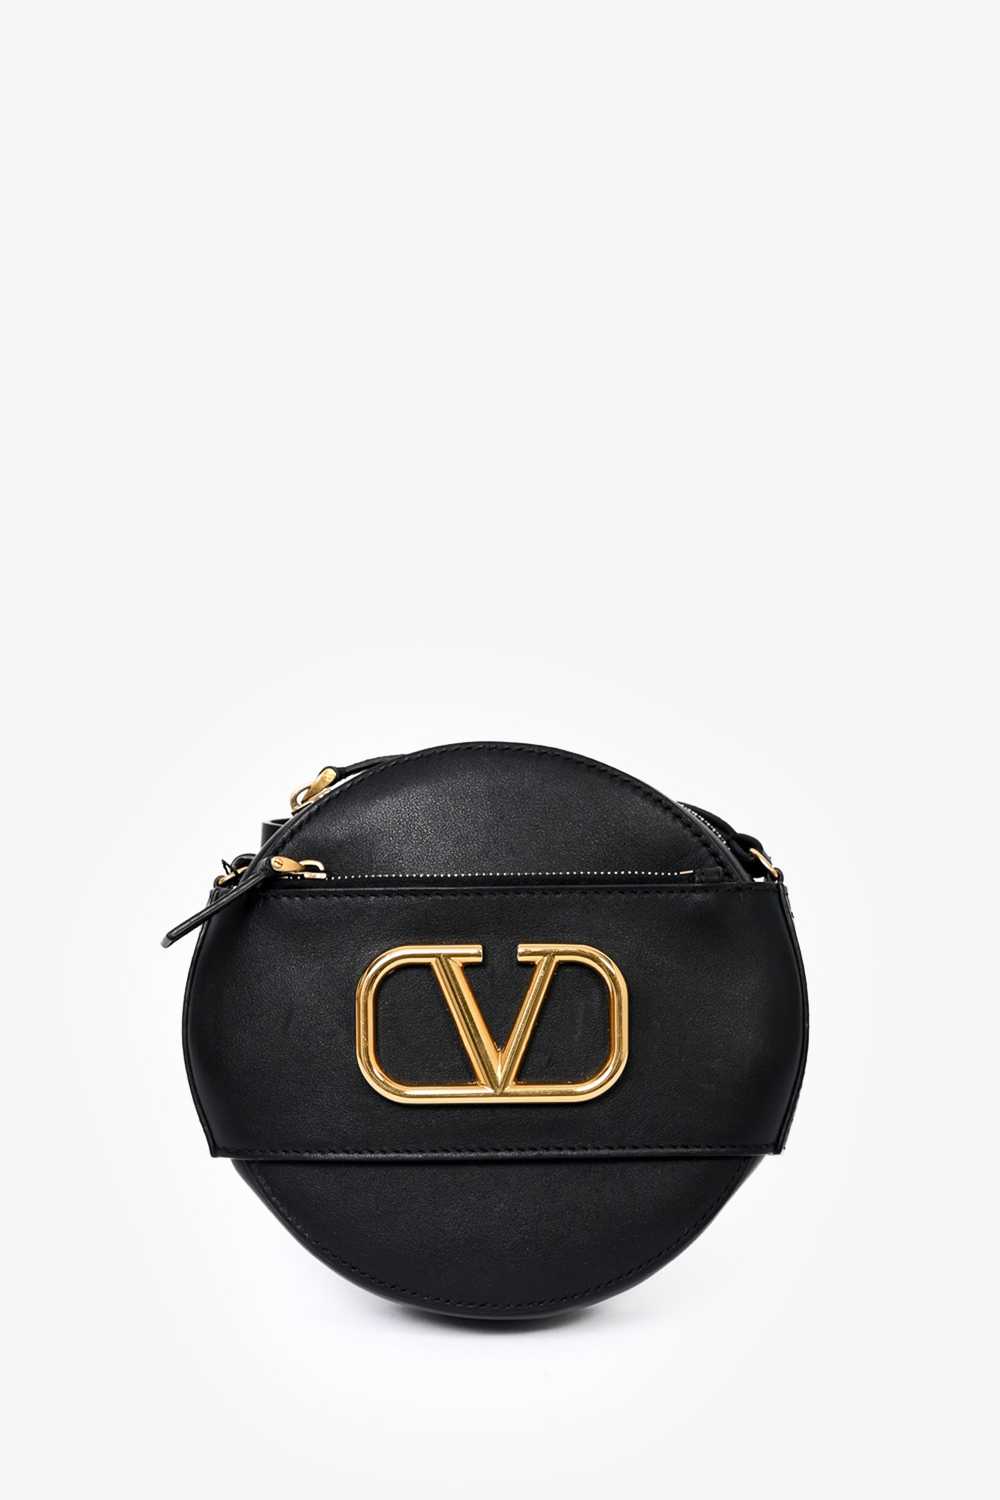 Valentino Black Leather Round V-Logo Crossbody Bag - image 5